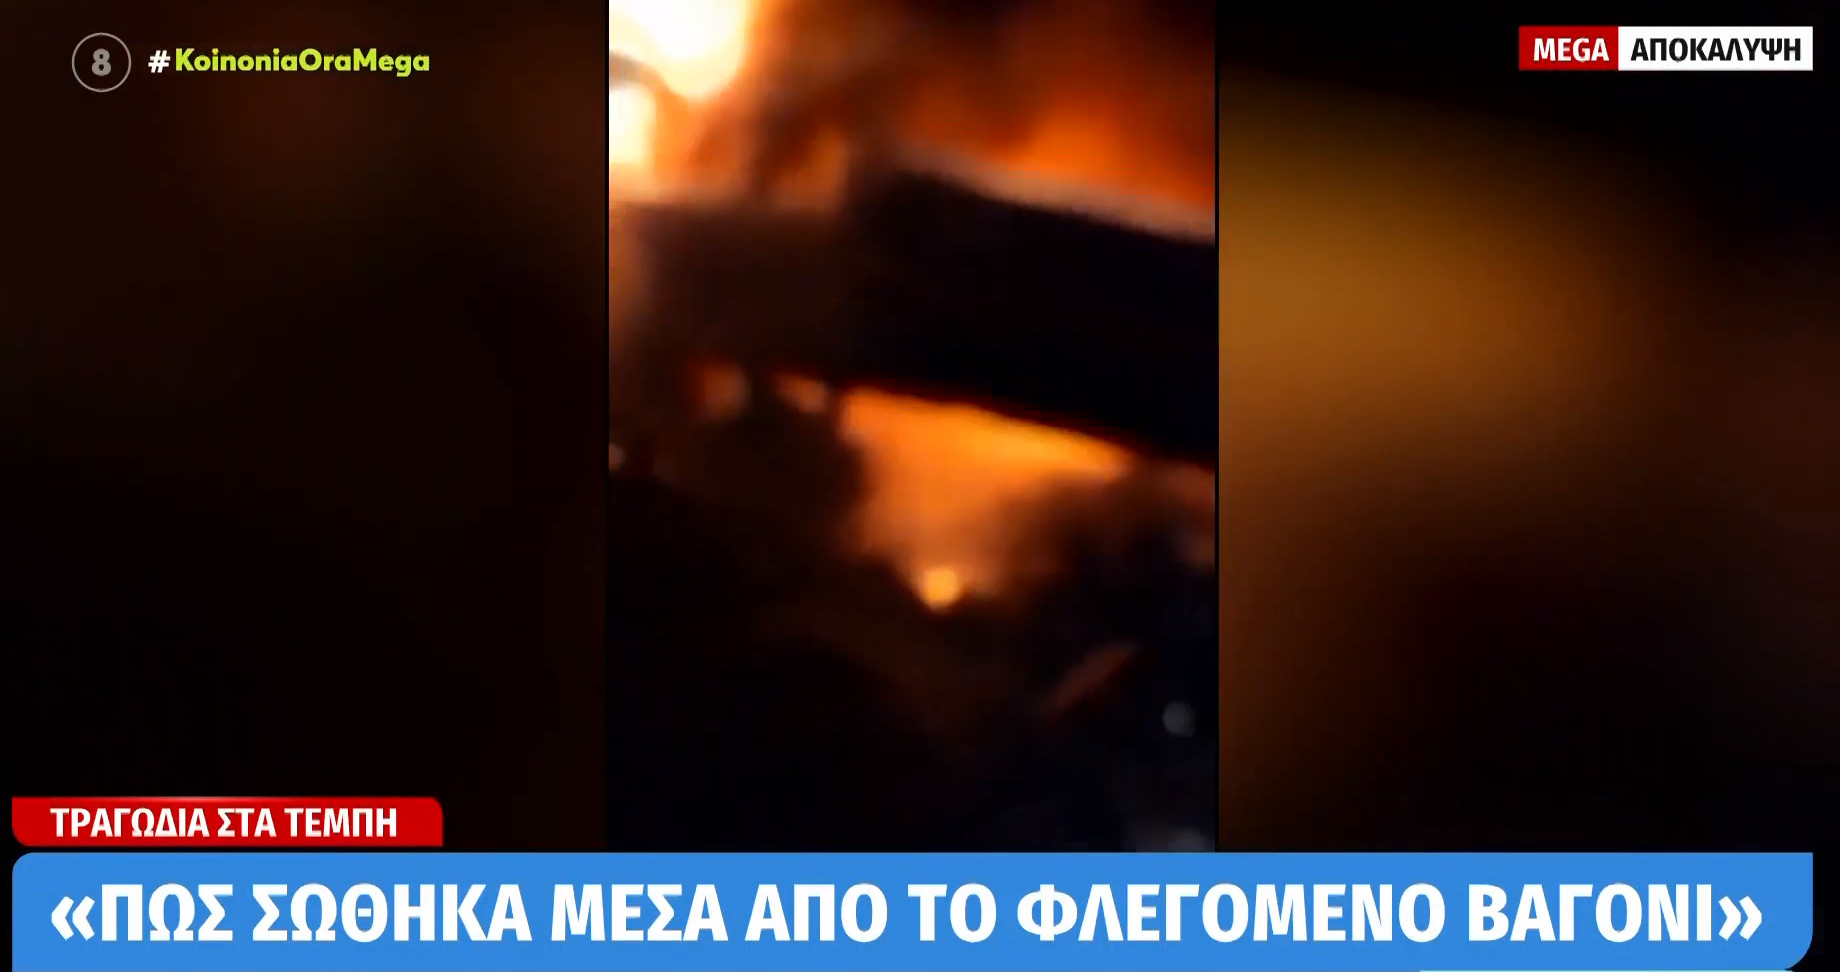 Τέμπη: Βίντεο ντοκουμέντο λίγα δευτερόλεπτα μετά τη σύγκρουση - «Πώς σώθηκα μέσα από το φλεγόμενο βαγόνι»